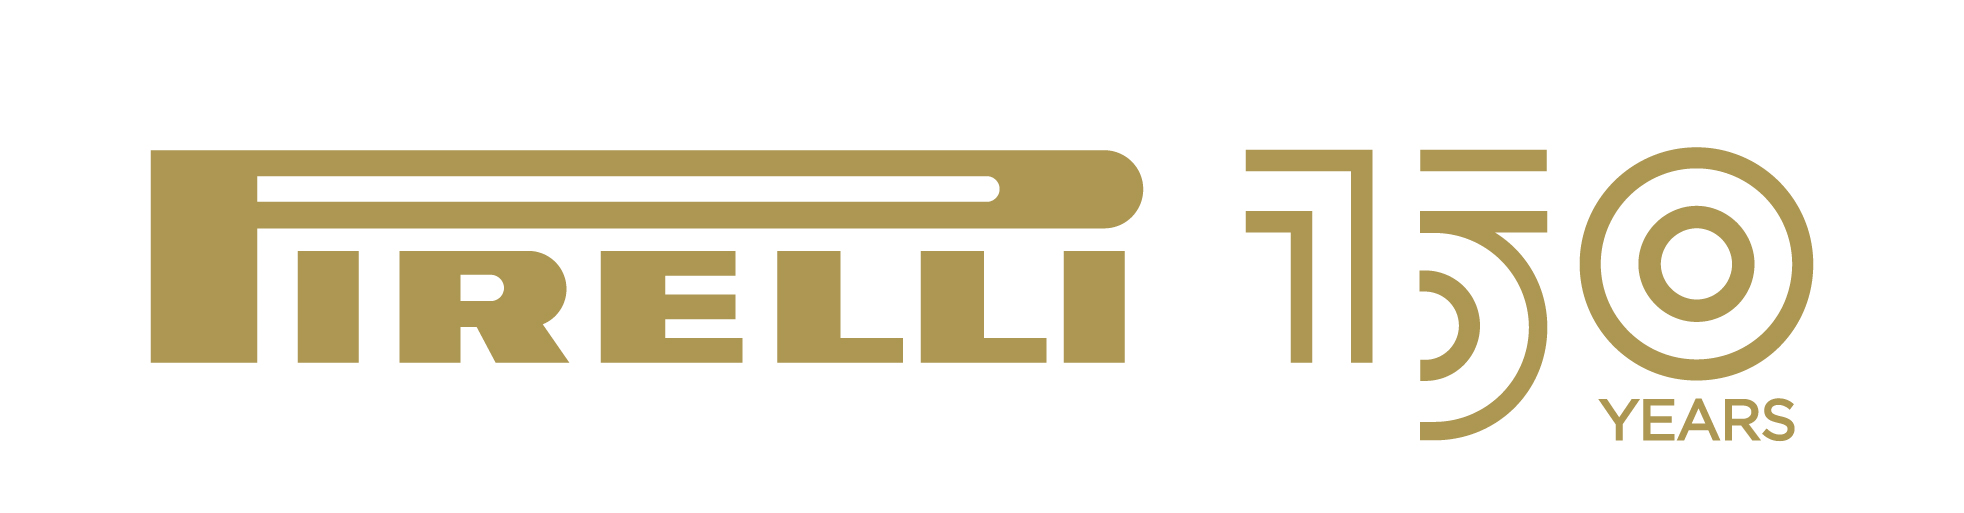 Pirelli logo1.png